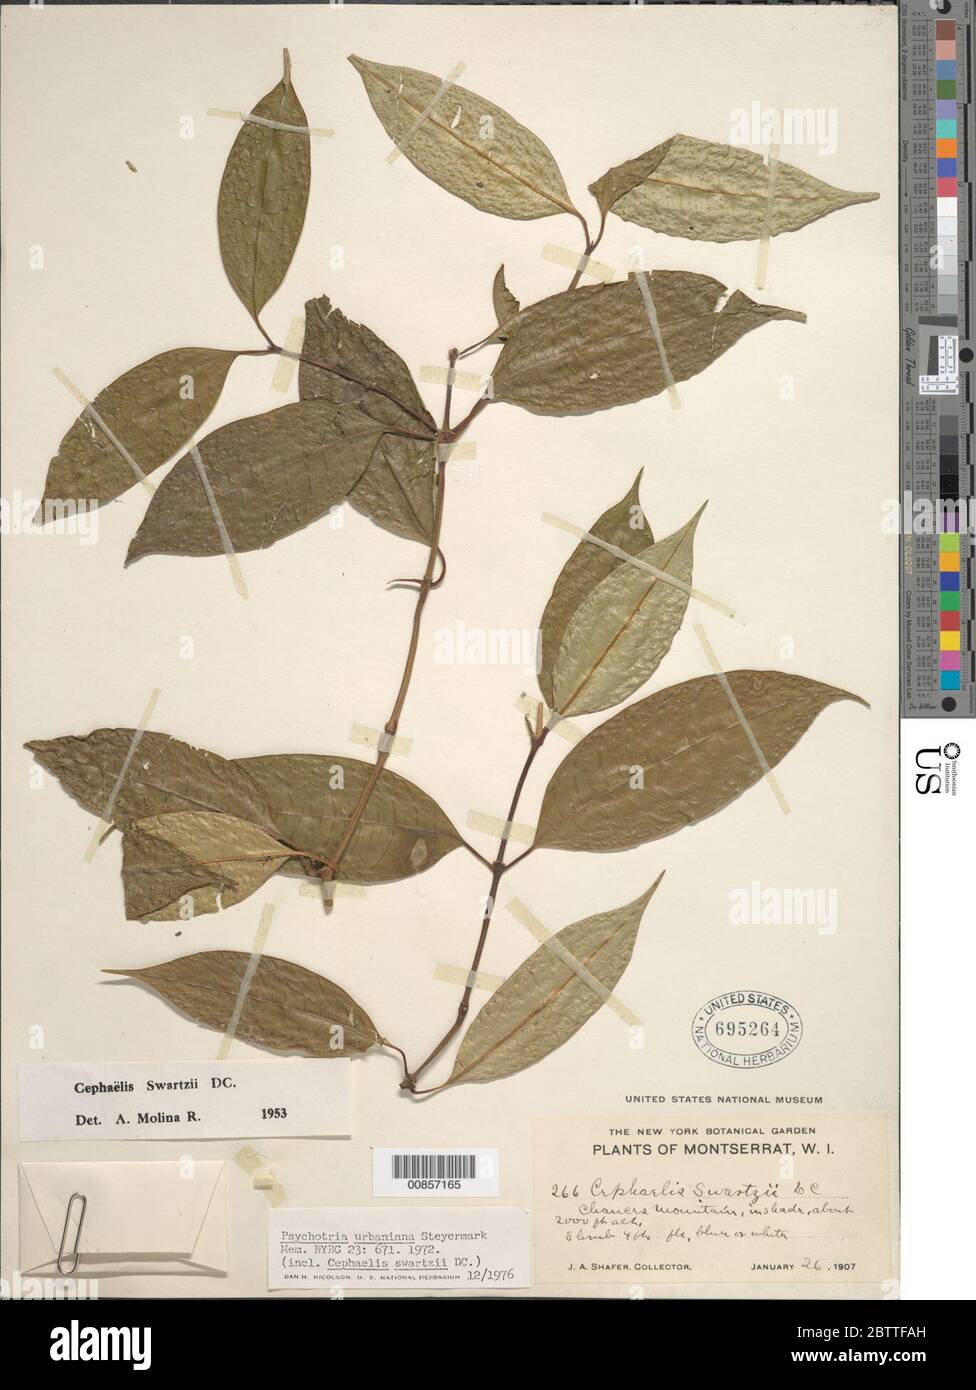 Psychotria urbaniana Steyerm. Stock Photo